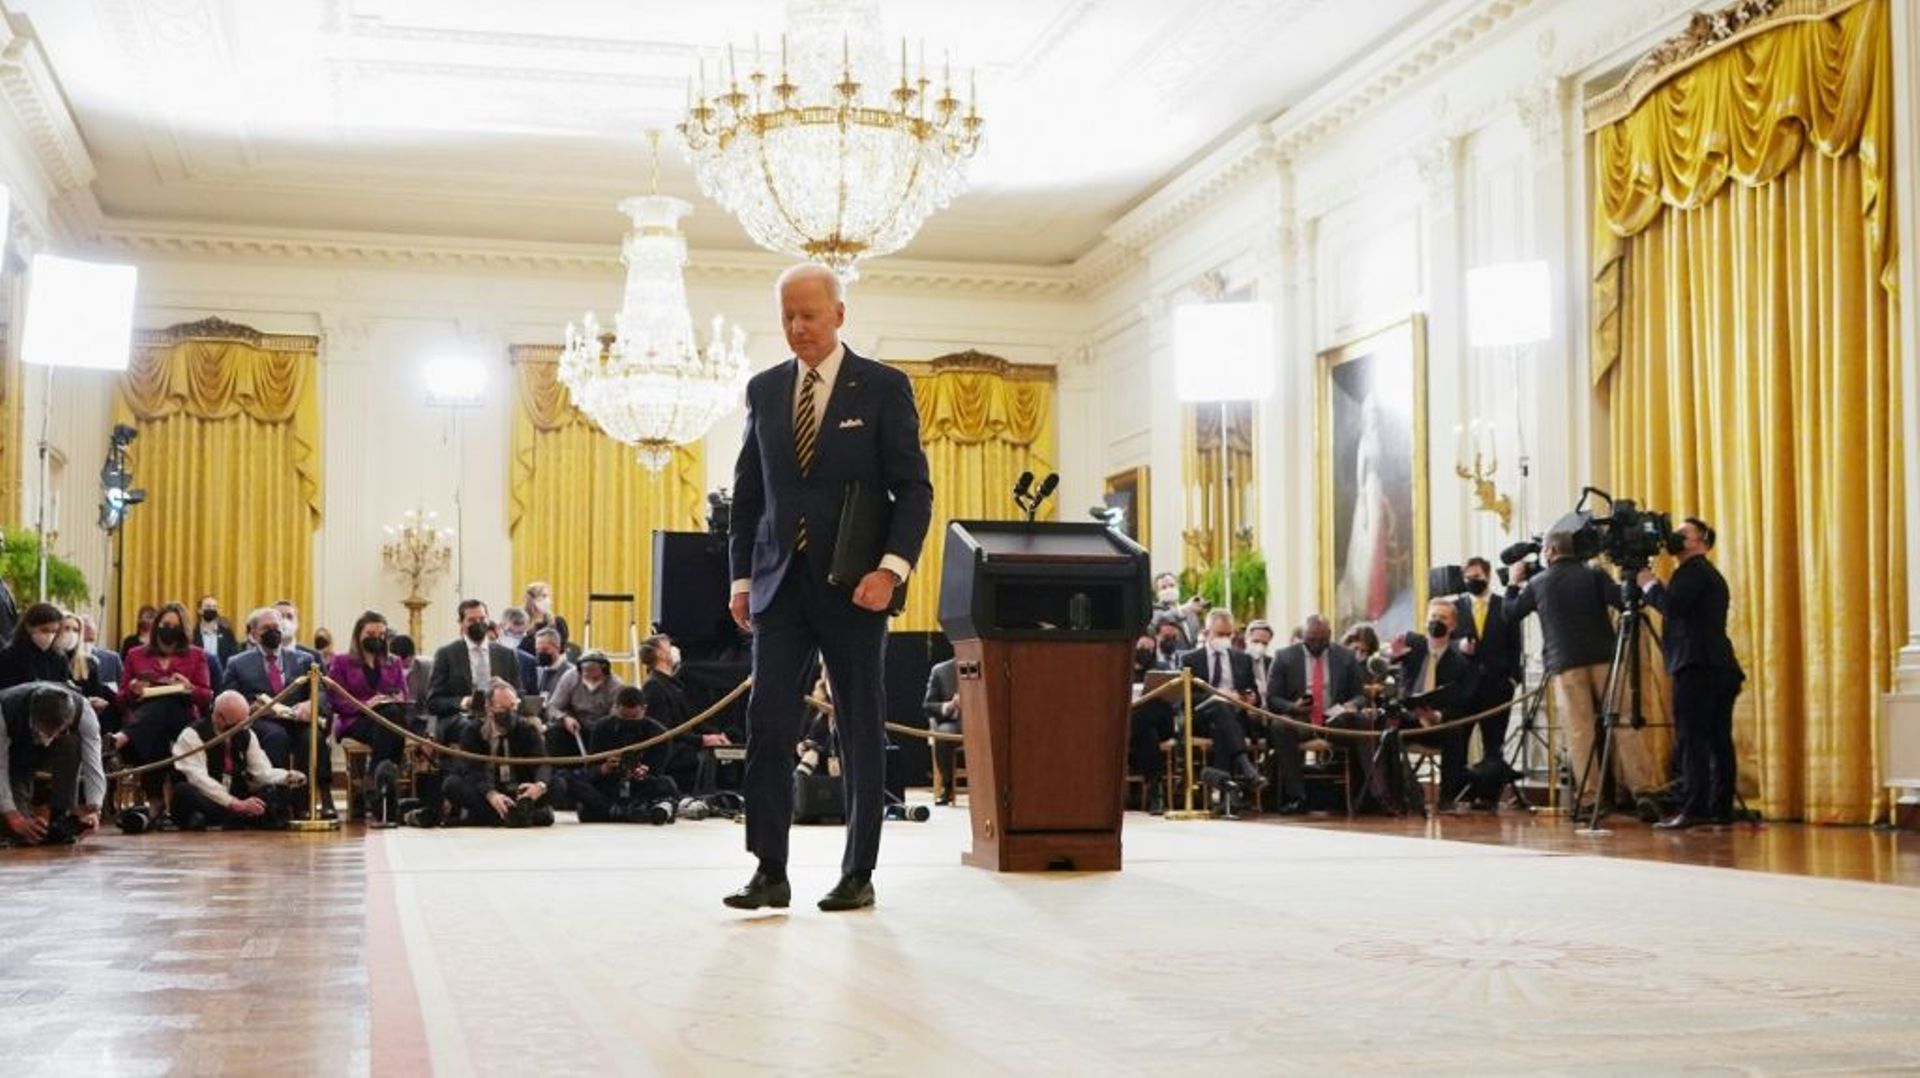 Joe Biden quitte les journalistes à la fin de sa conférence de presse à la Maison Blanche, jeudi 19 janvier 2022